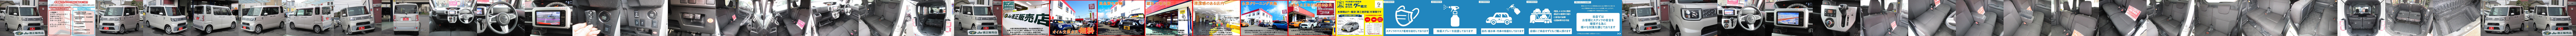 ダイハツ ウェイク 中古車情報表示 岡山市南区 ａｊ 安達太陽自動車